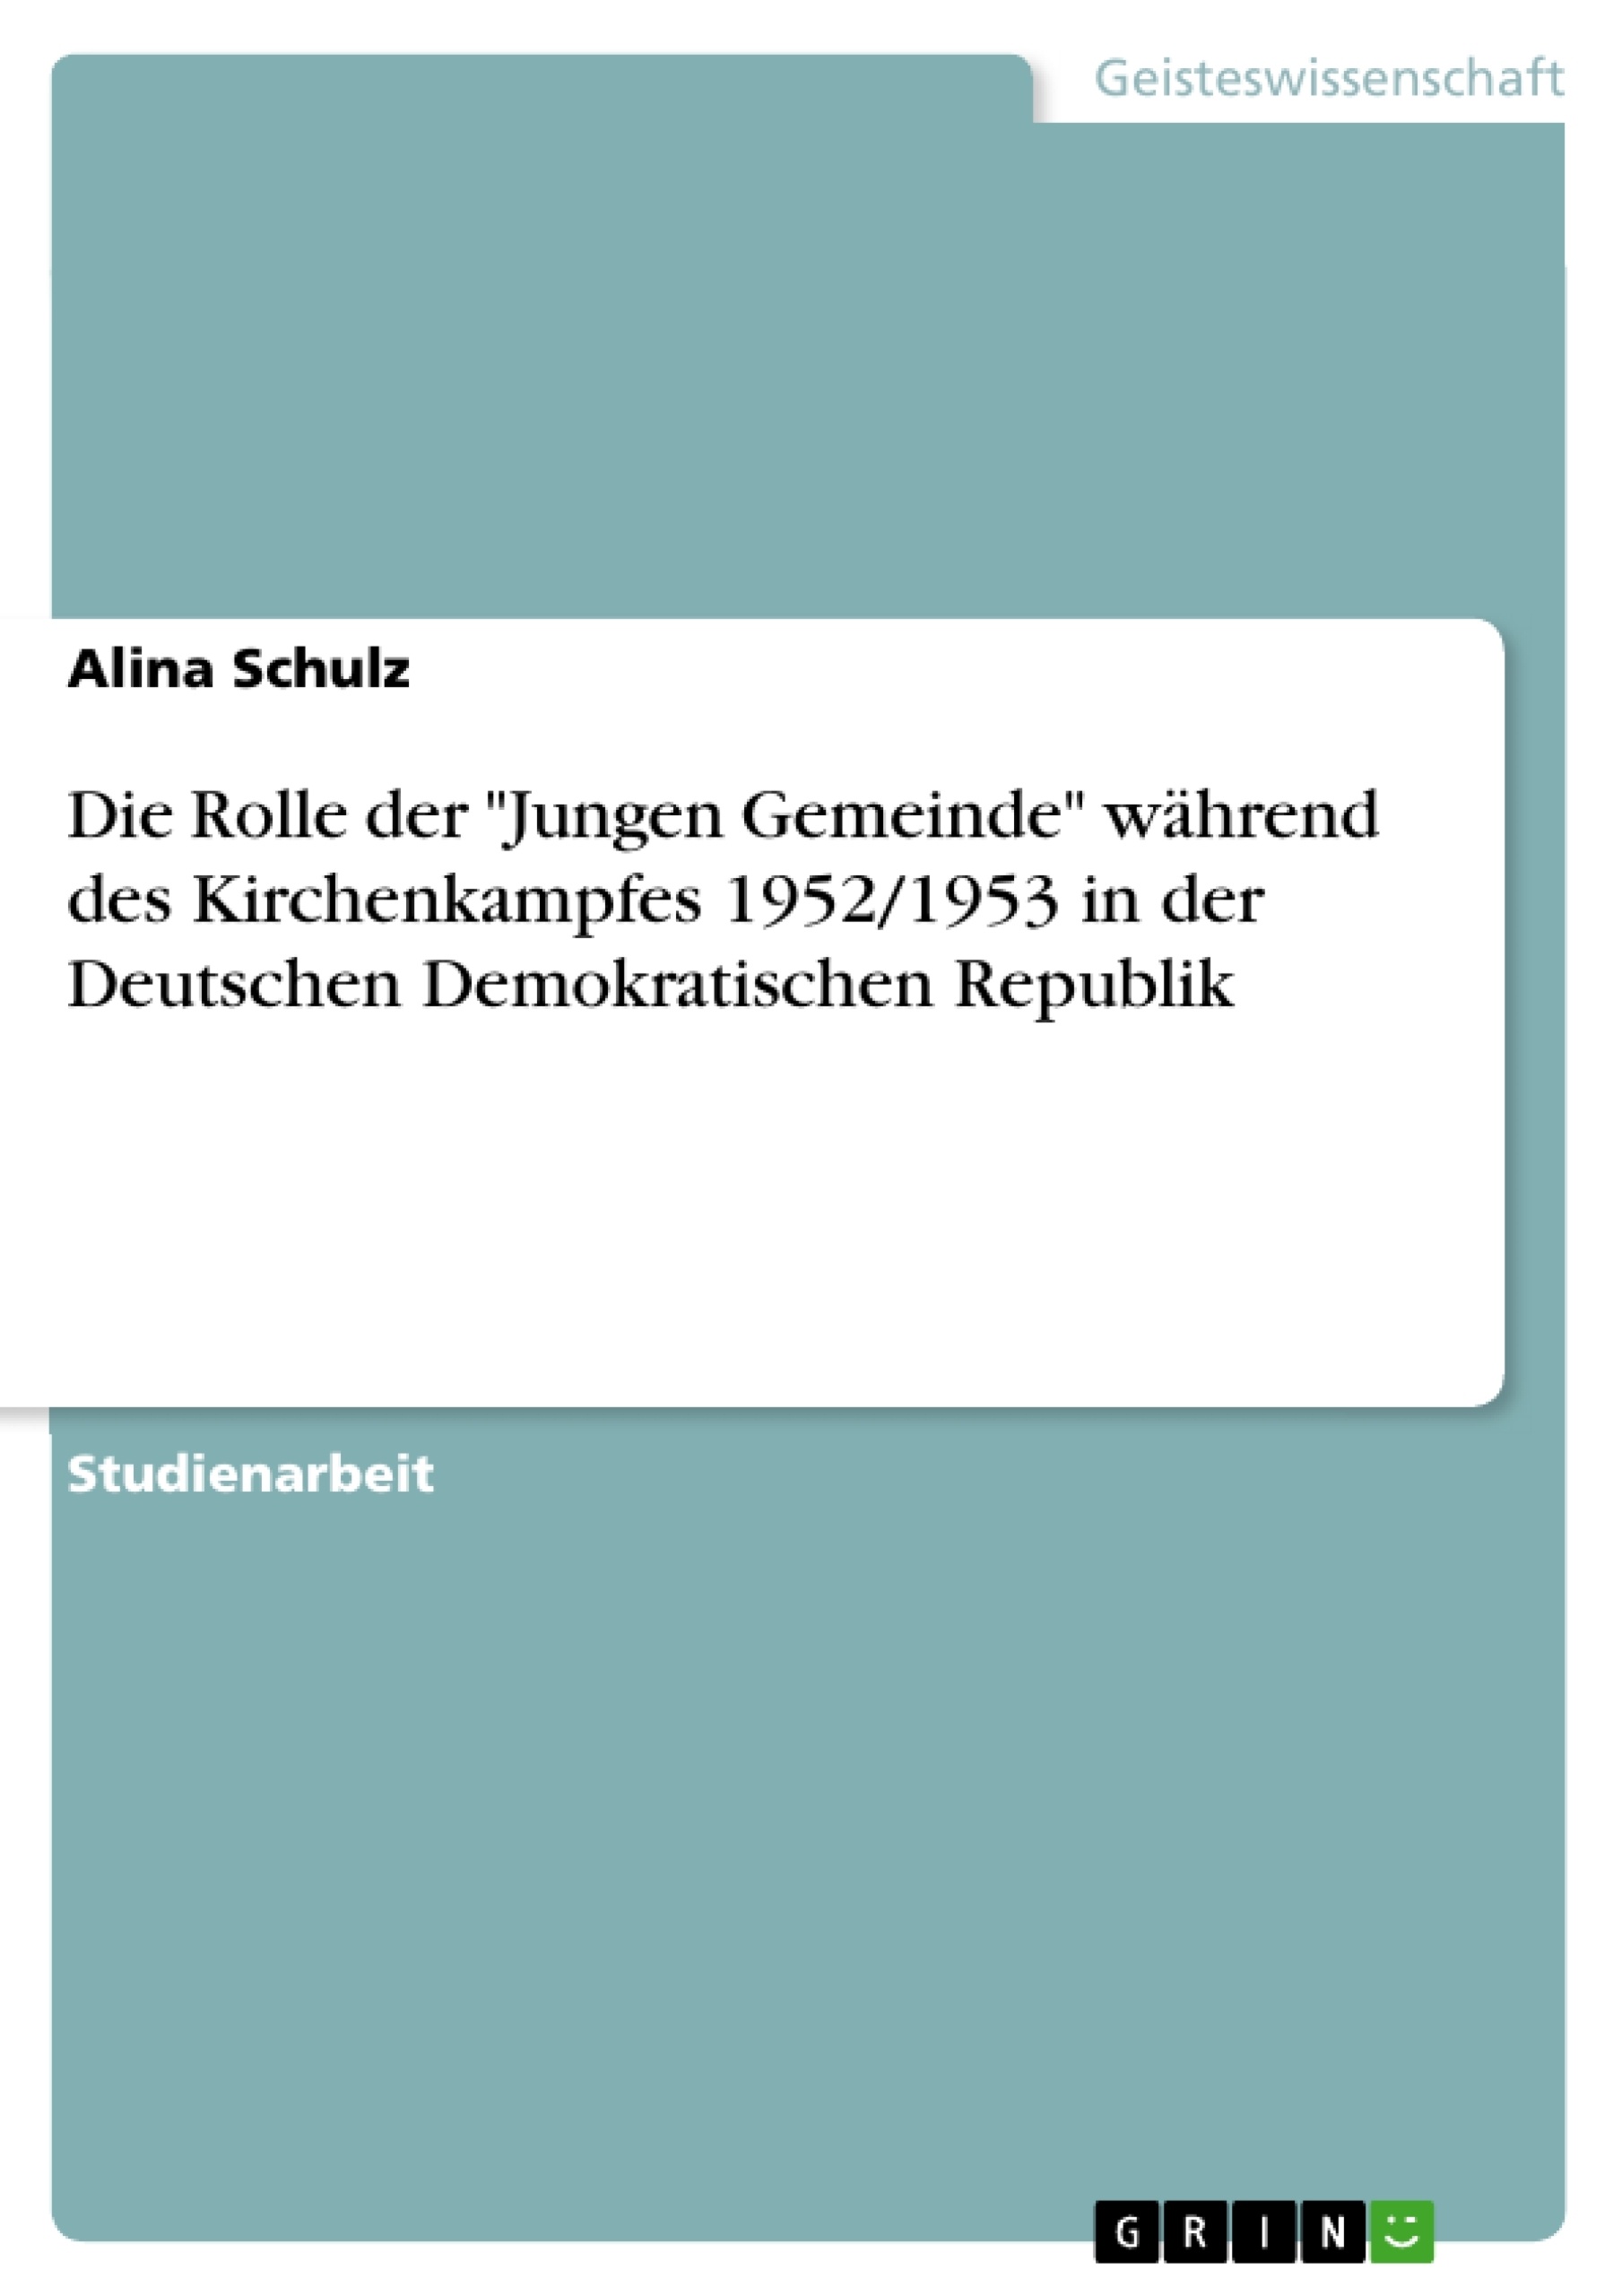 Title: Die Rolle der "Jungen Gemeinde" während des Kirchenkampfes 1952/1953 in der Deutschen Demokratischen Republik